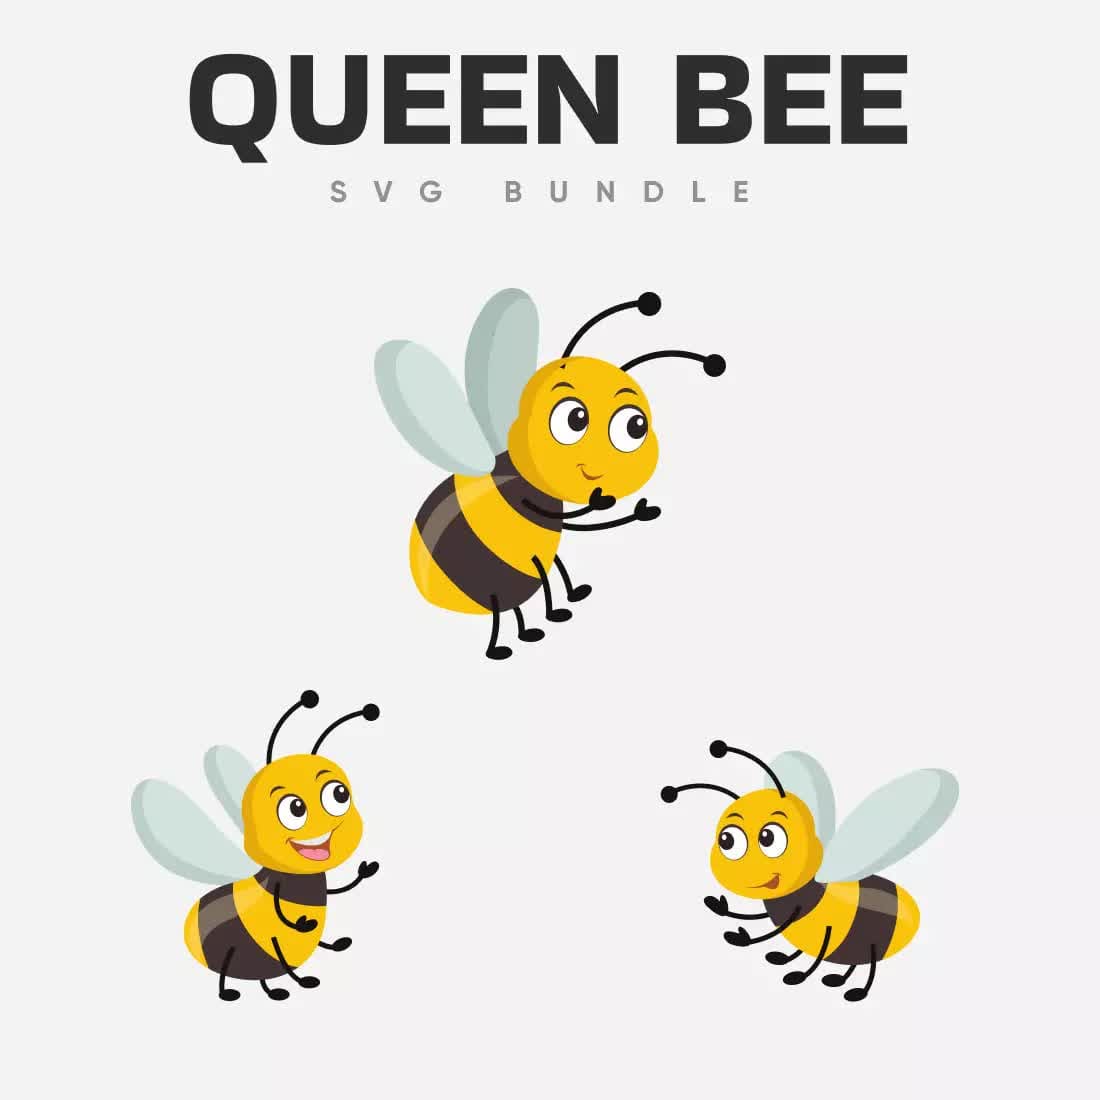 Queen Bee SVG Bundle Preview 1.